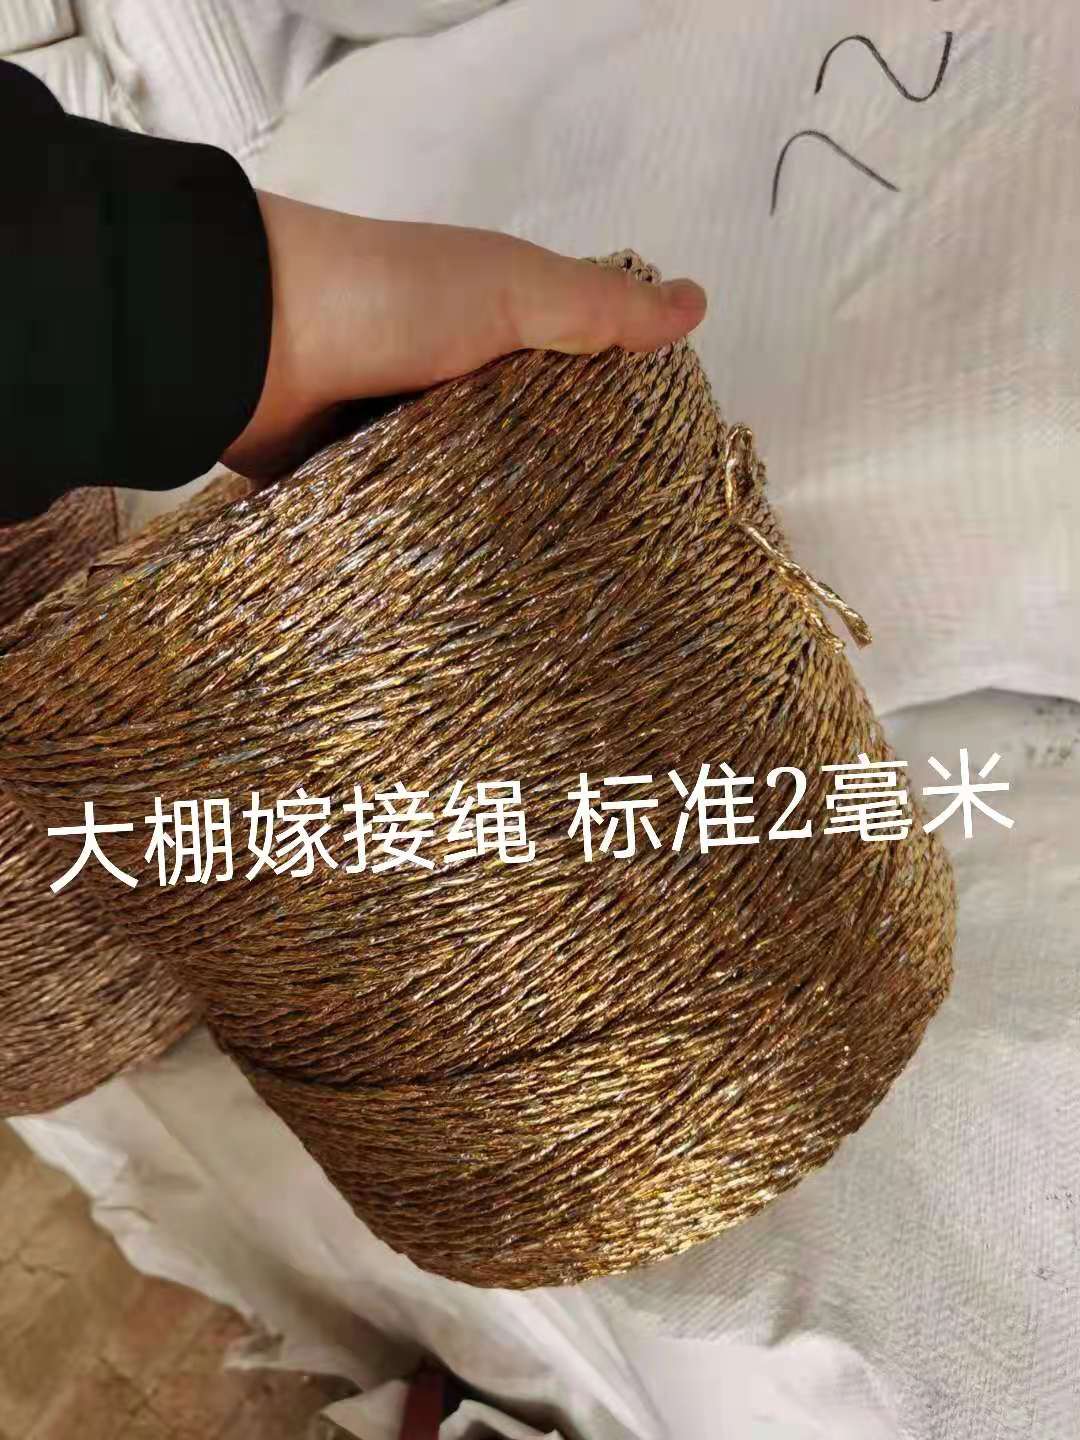 黑龙江大棚吊秧绳制造商厂价出售报价单